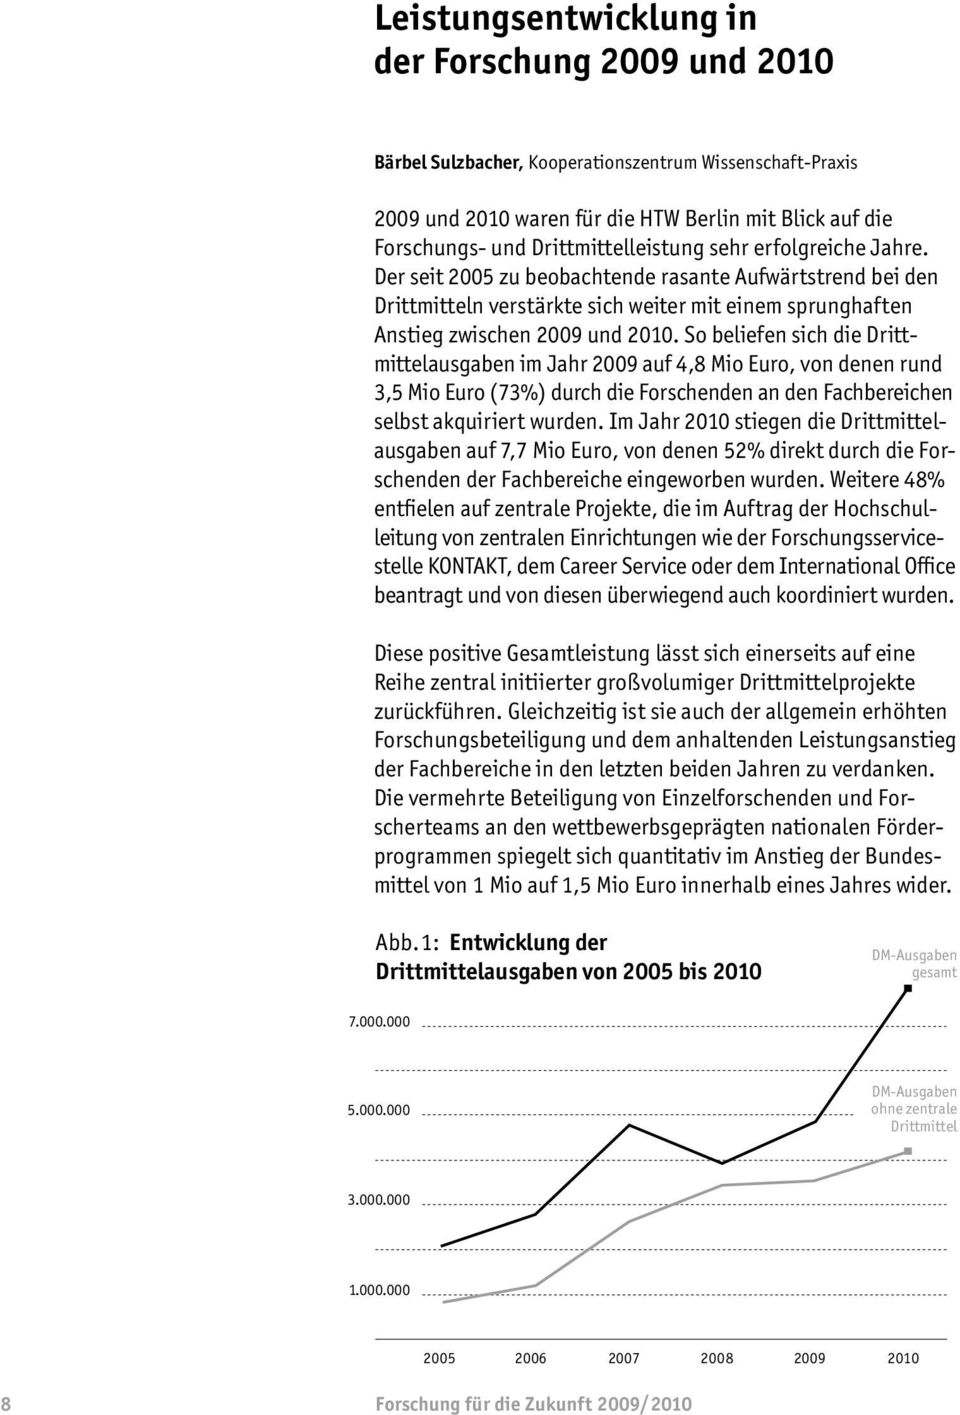 So beliefen sich die Drittmittelaus gaben im Jahr 2009 auf 4,8 Mio Euro, von denen rund 3,5 Mio Euro (73%) durch die Forschenden an den Fachbereichen selbst akquiriert wurden.